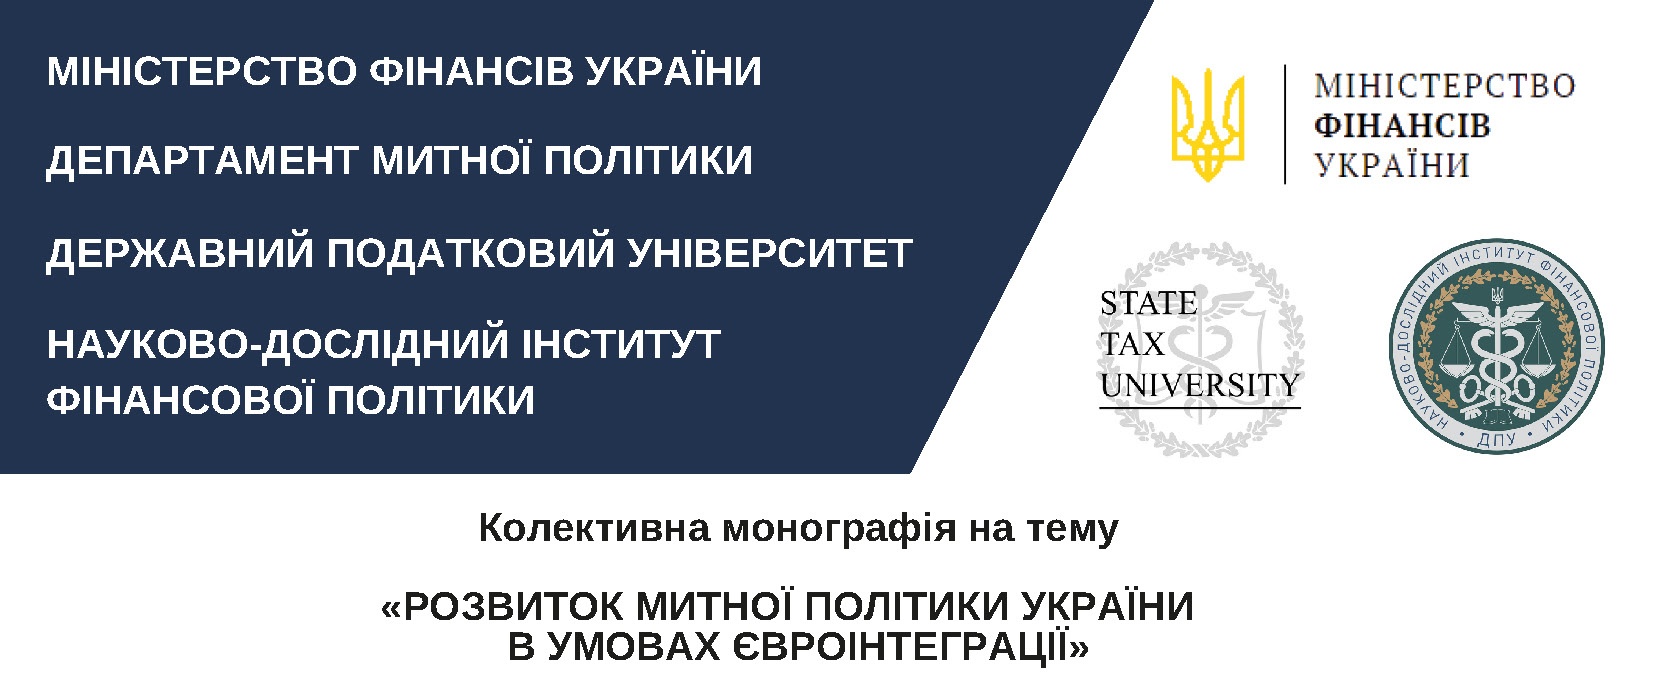 Запрошуємо до участі у колективній монографії «Розвиток митної політики України в умовах євроінтеграції»